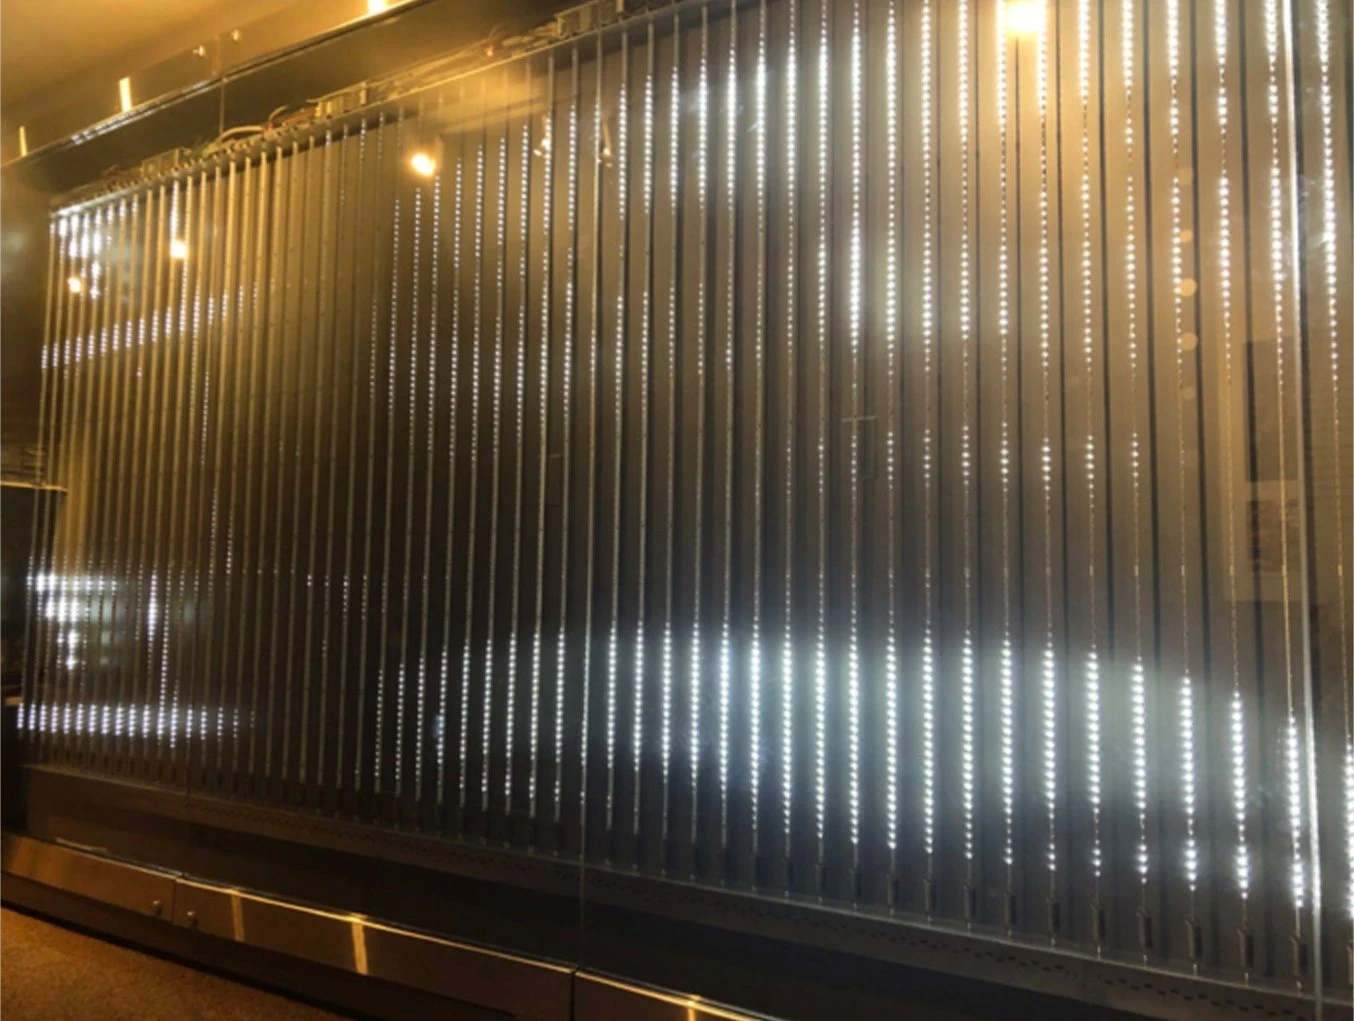 史密森尼美國藝術博物館為《For SAAM》建置的LED老化燈牆，2019；林淑雯提供-圖片